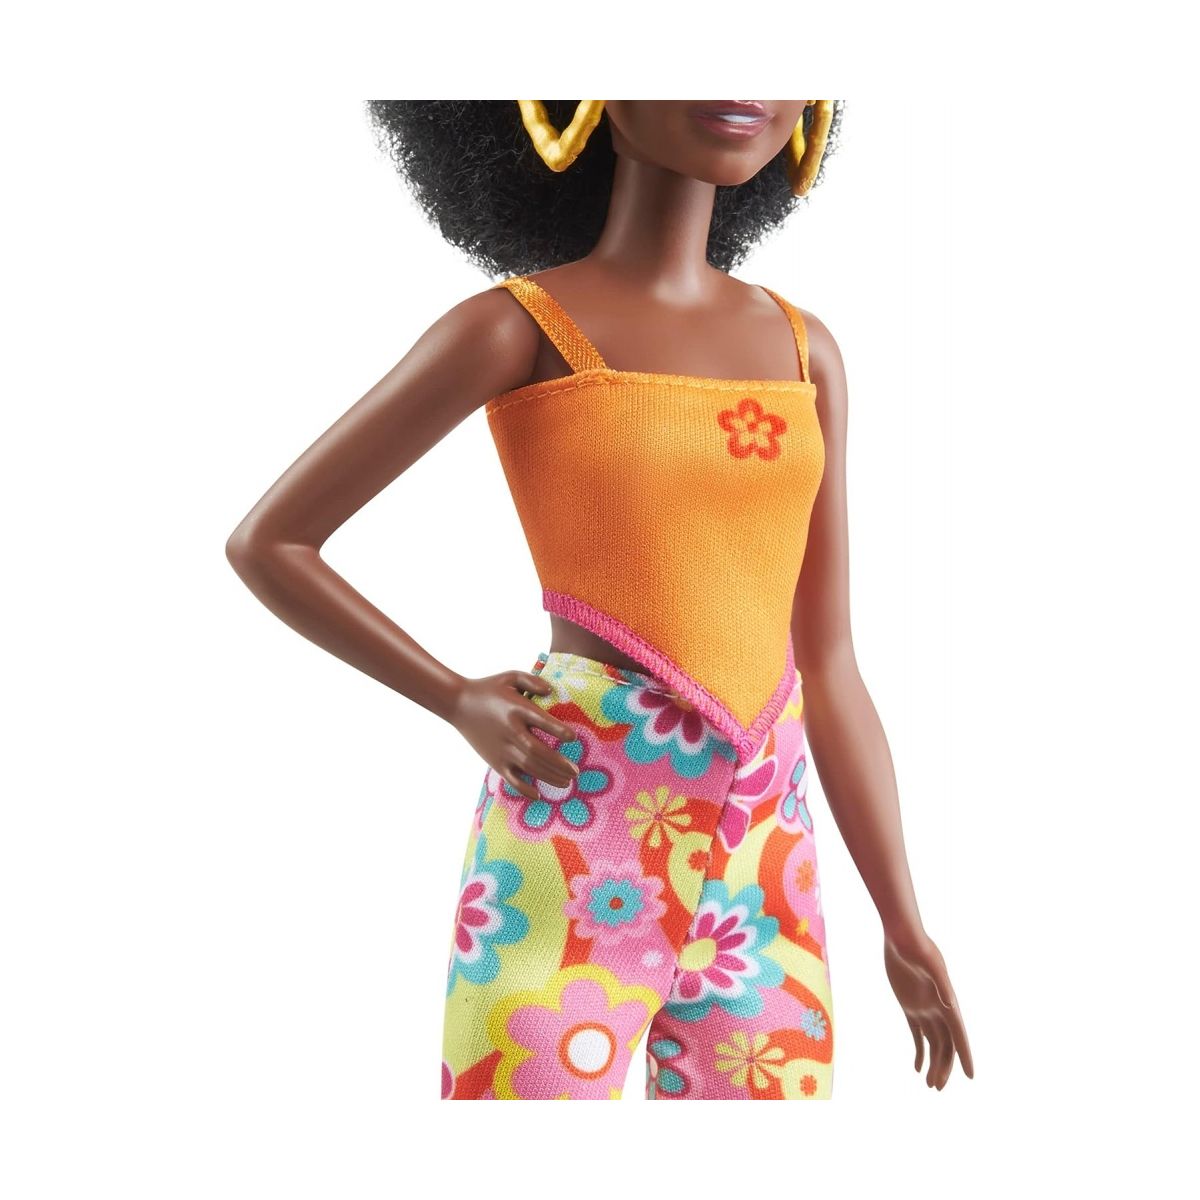 Lalka modne przyjaciółki, mix wzorów [mm:] 290 Barbie (FBR37)